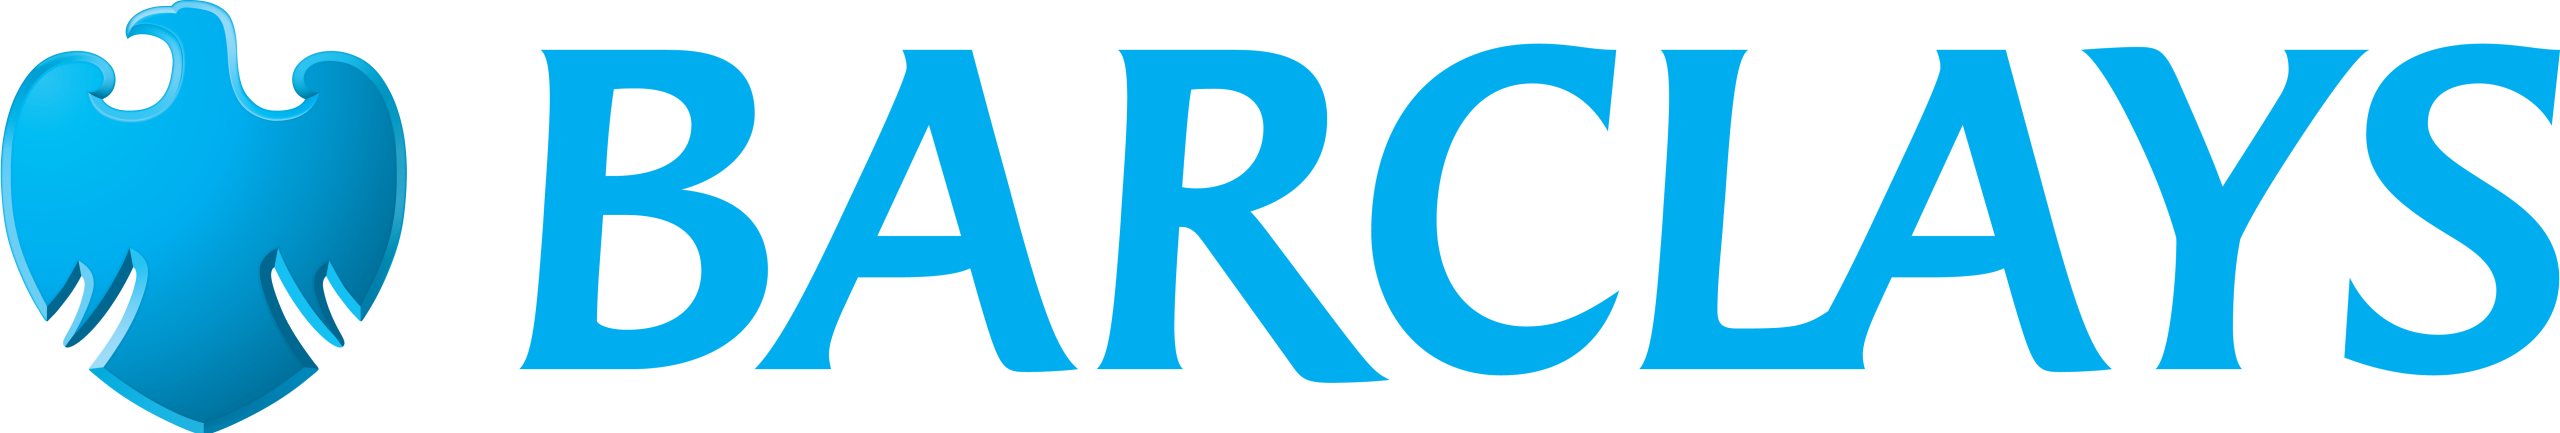 logotipo de barclays